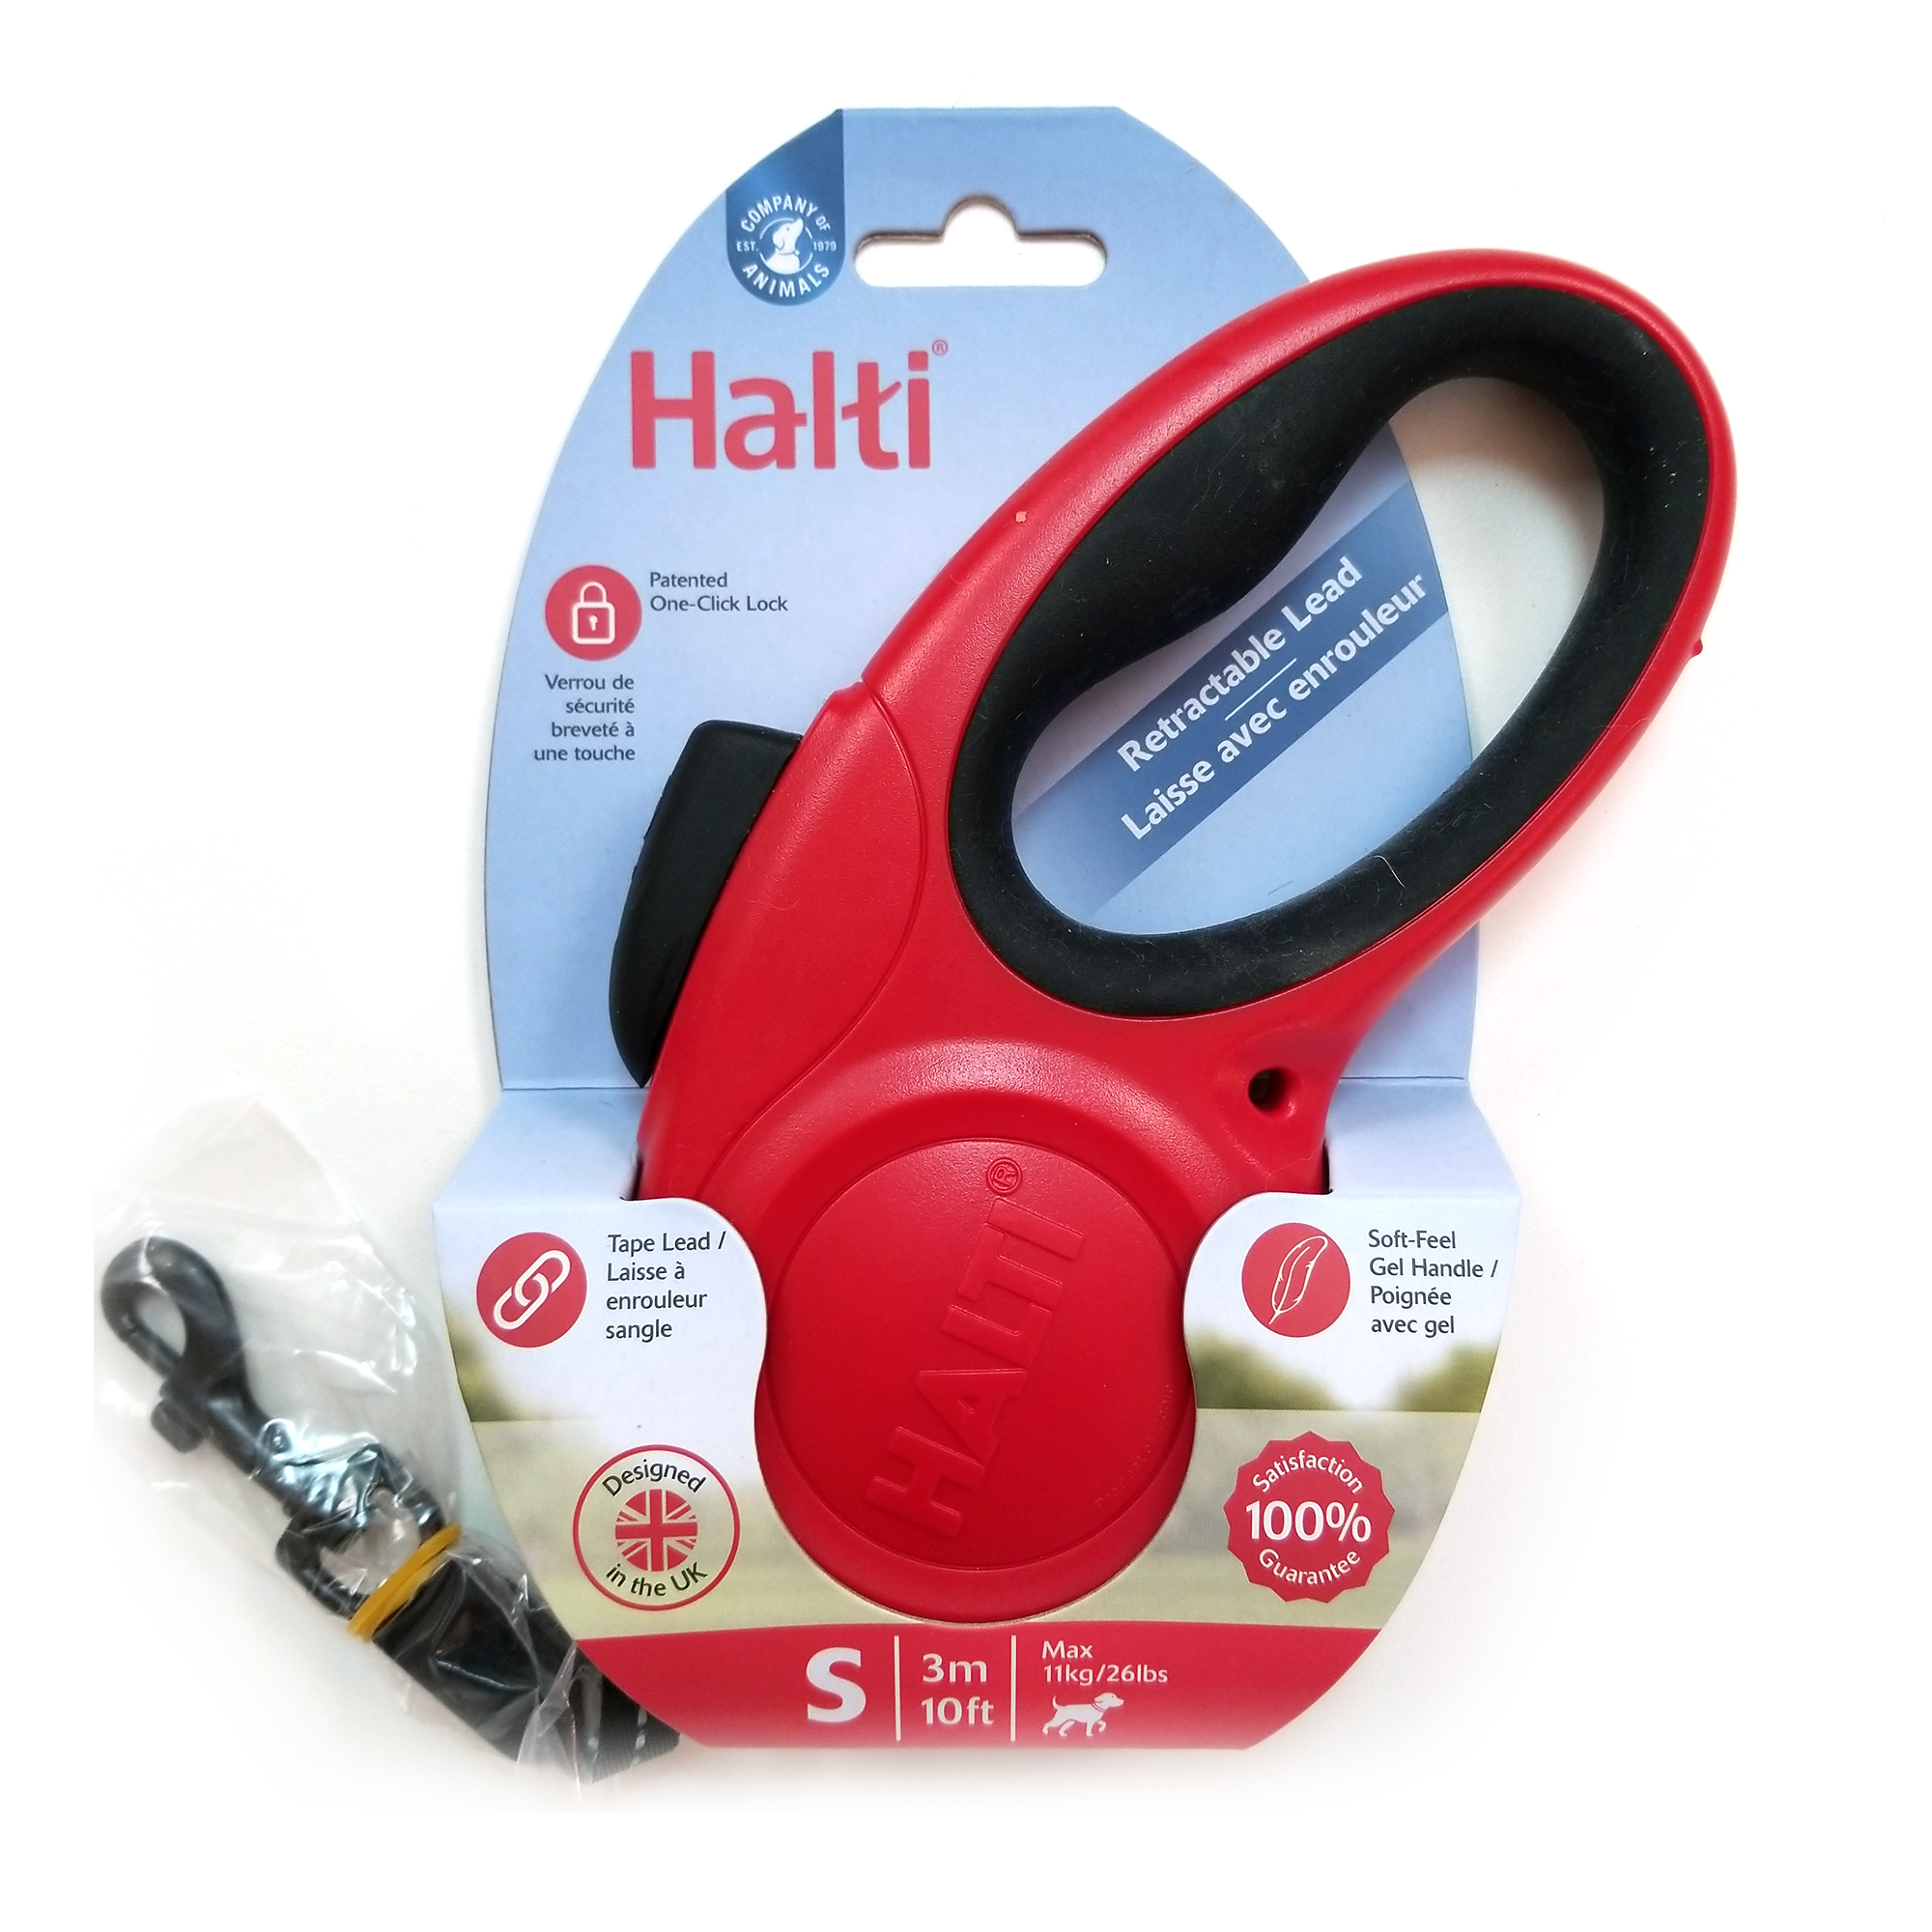 Halti Retractable Lead 10' Max 26lbs, Red, Small